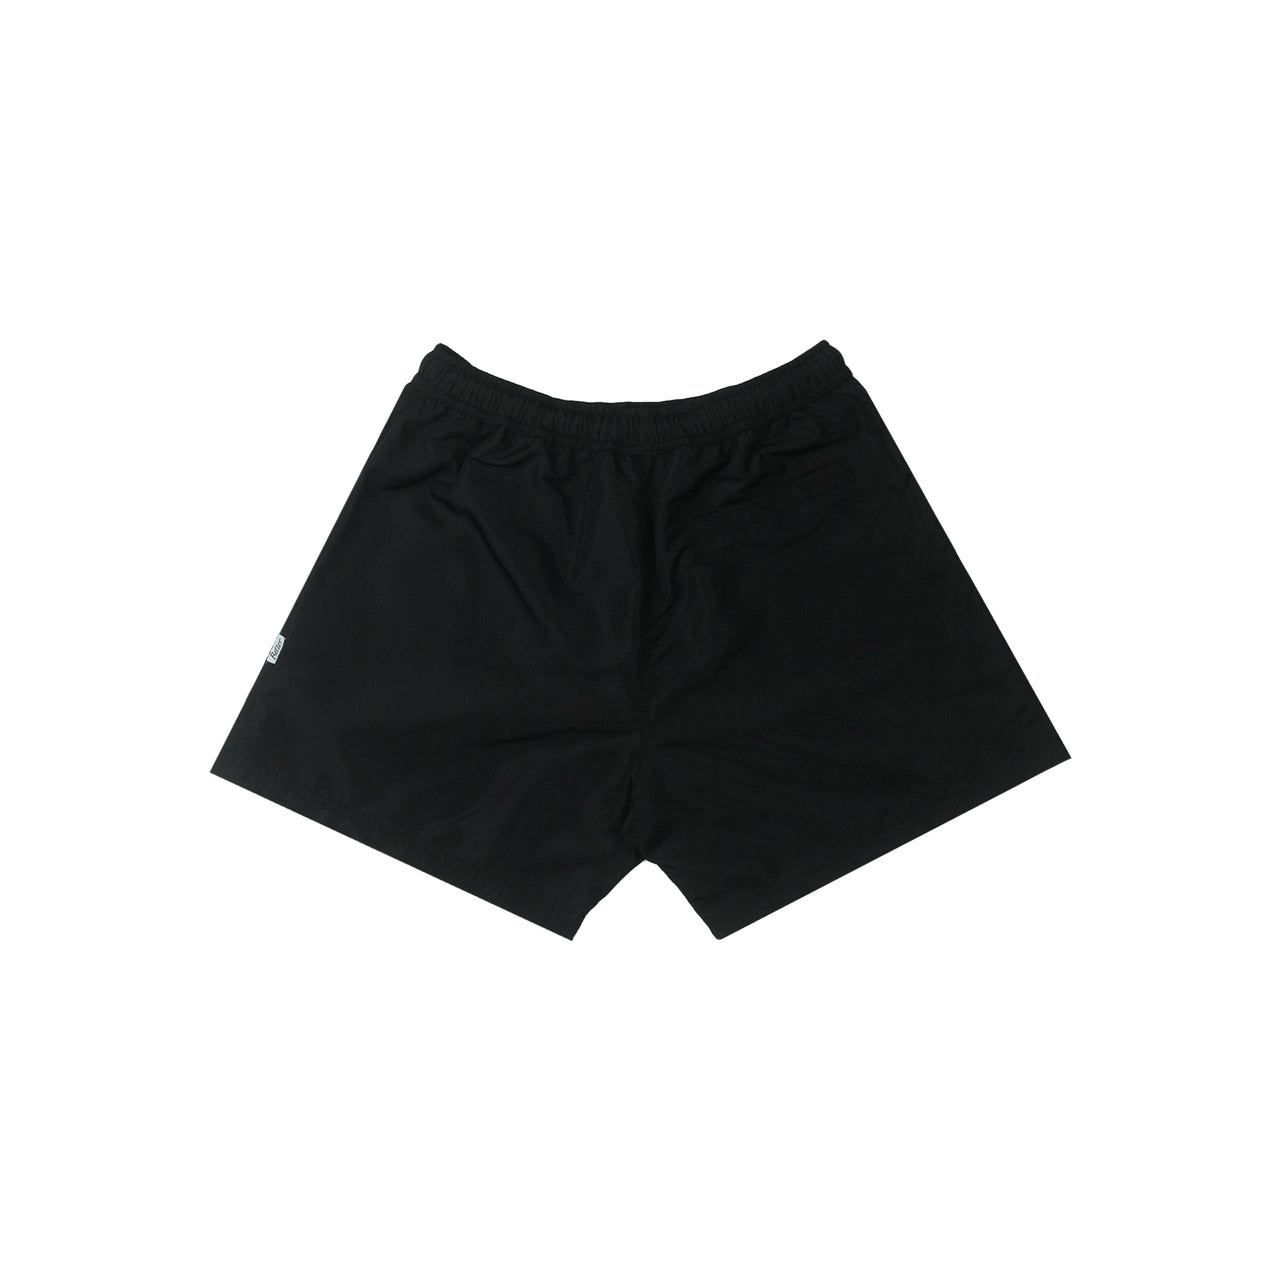 Joyland Nylon Shorts Black